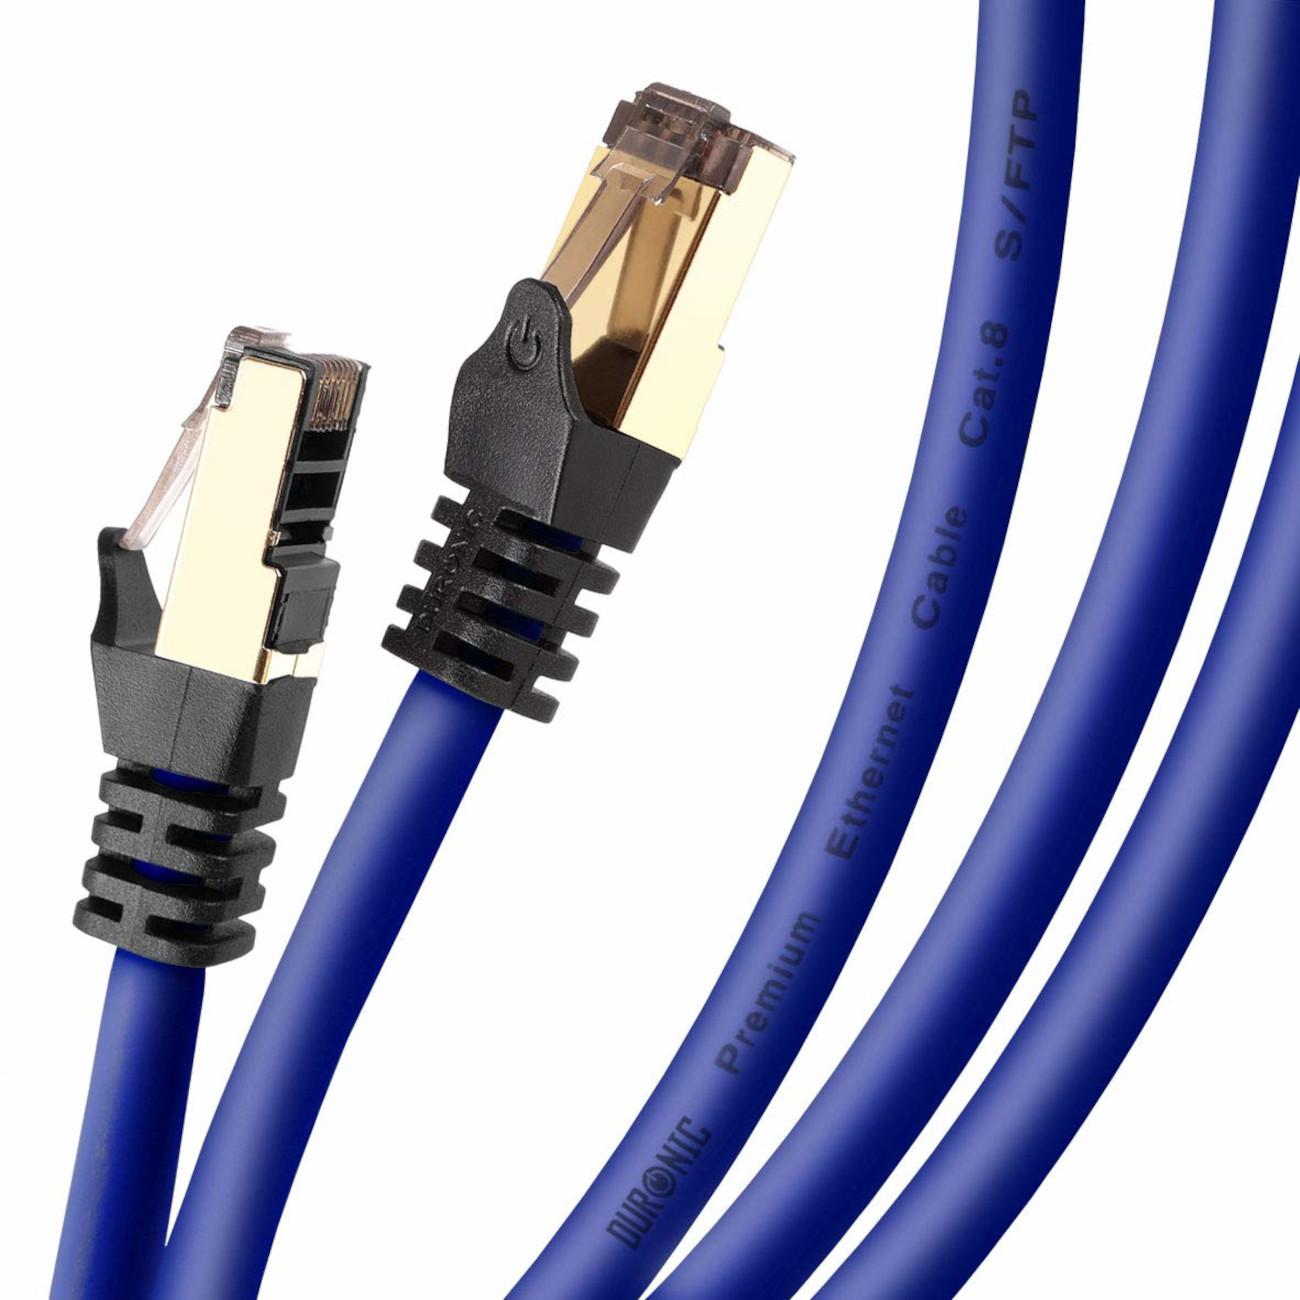 DURONIC CAT8 BE 2m Ethernetkabel m RJ45 Konsole, | und Patchkabel | Lankabel Netzwerkkabel, Router für | 5.000 MB/s 2